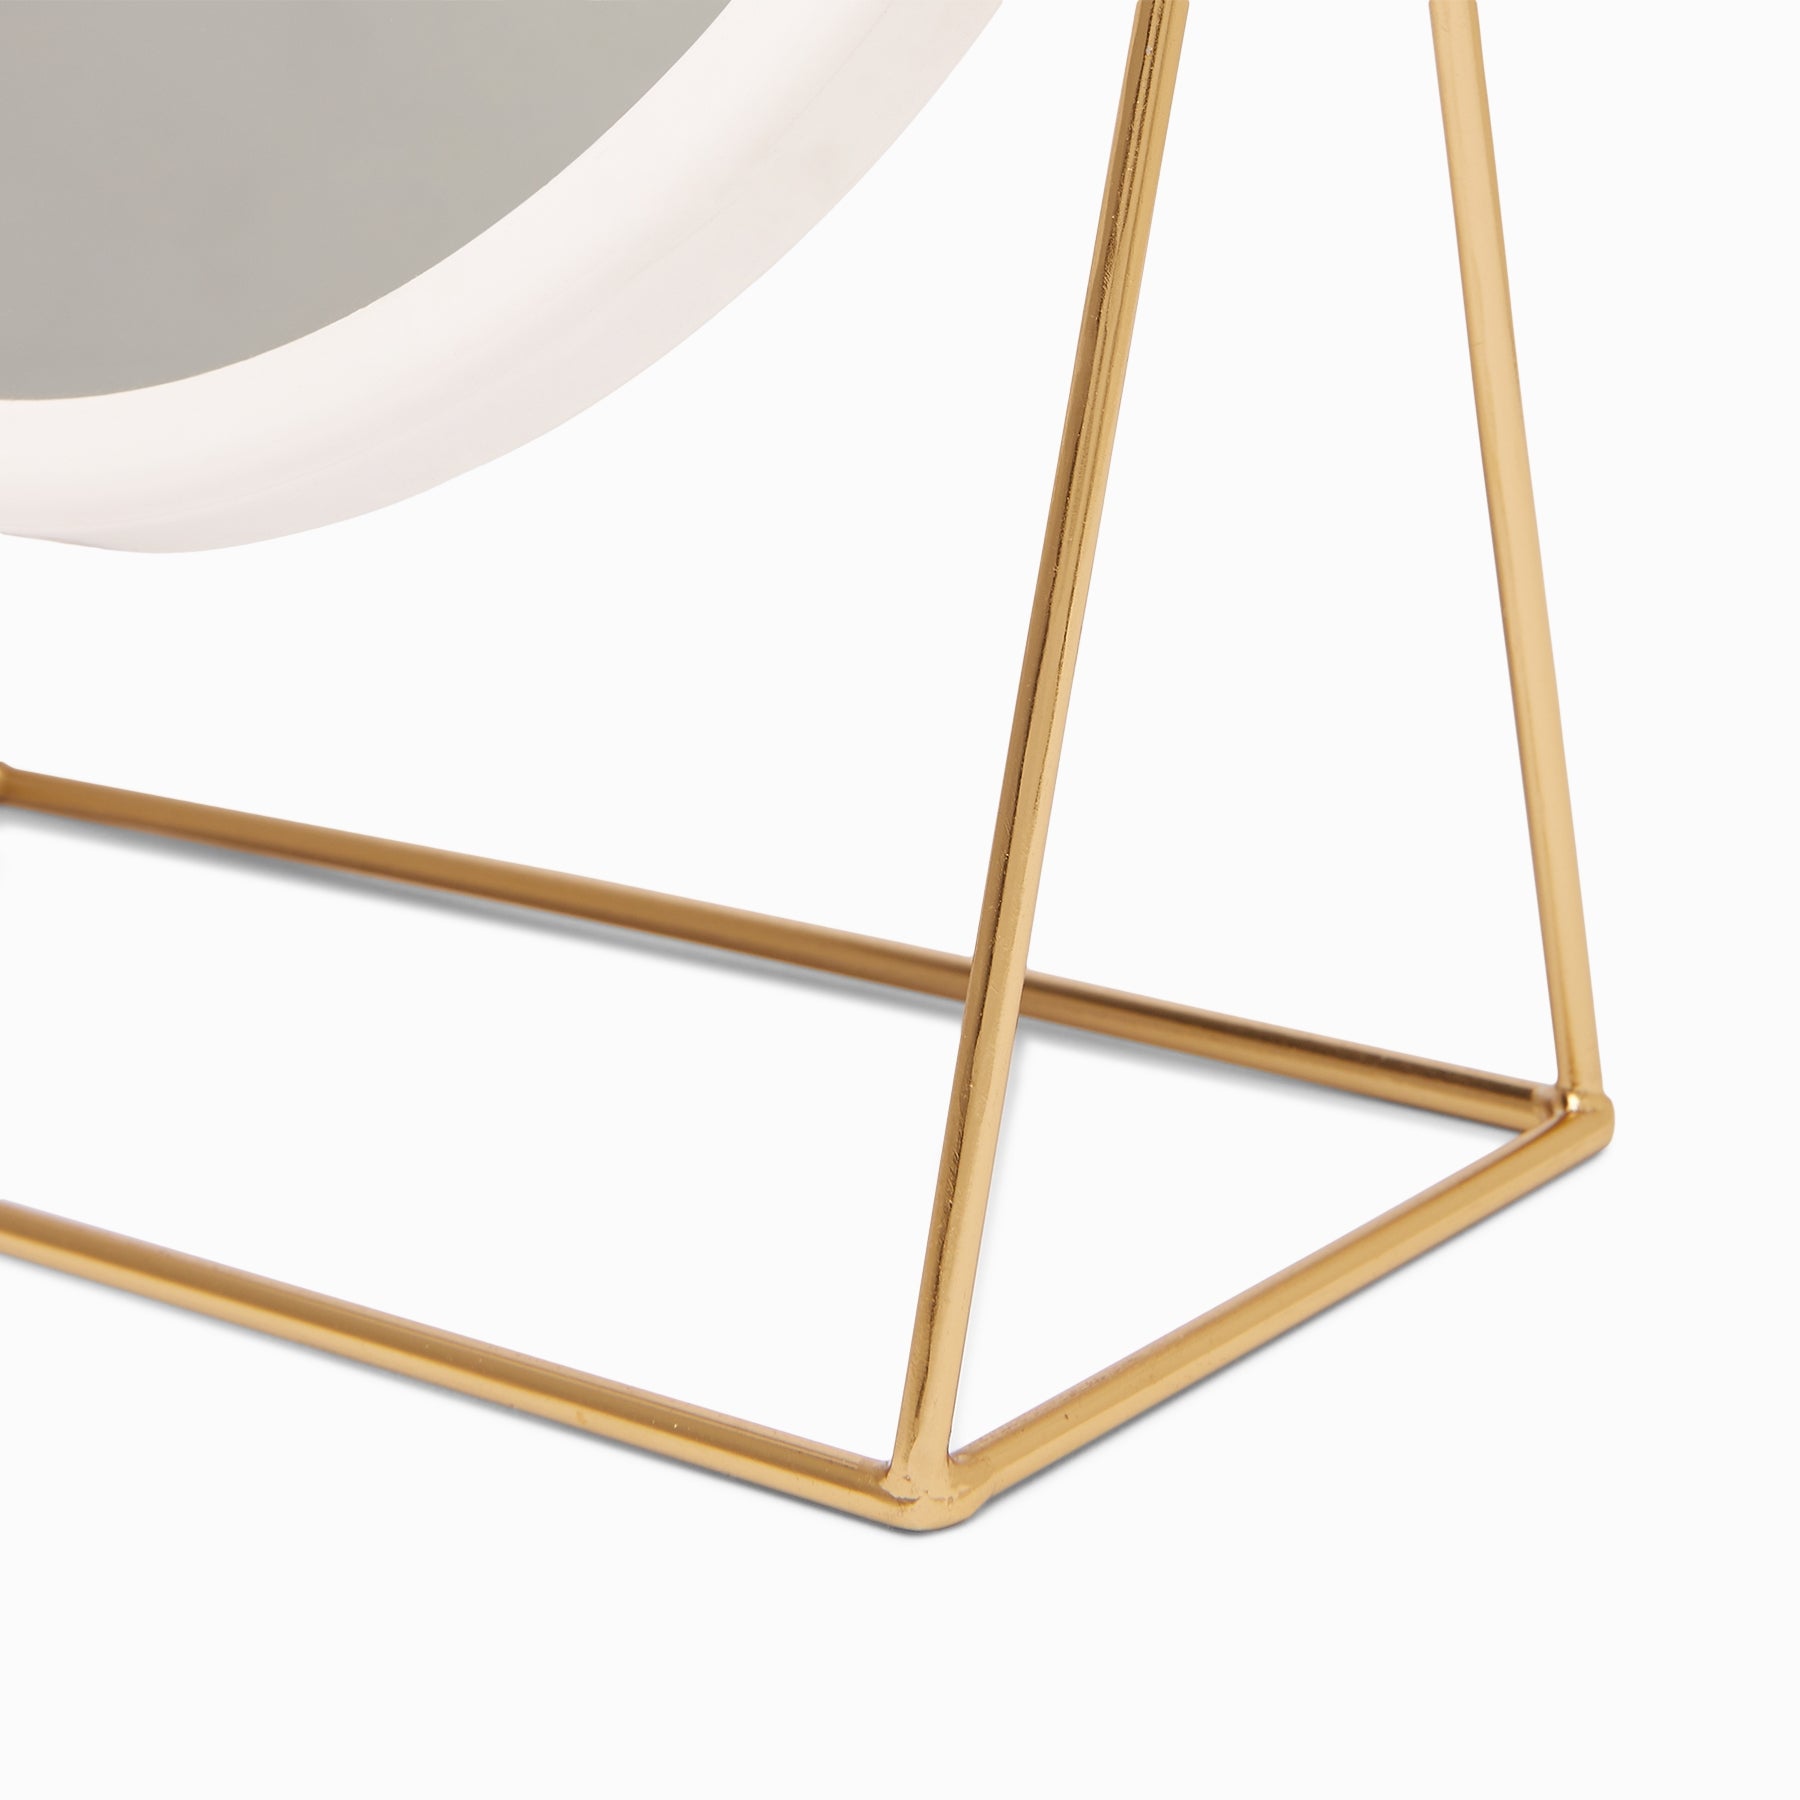 White & Gold Minimal Round Table Mirror